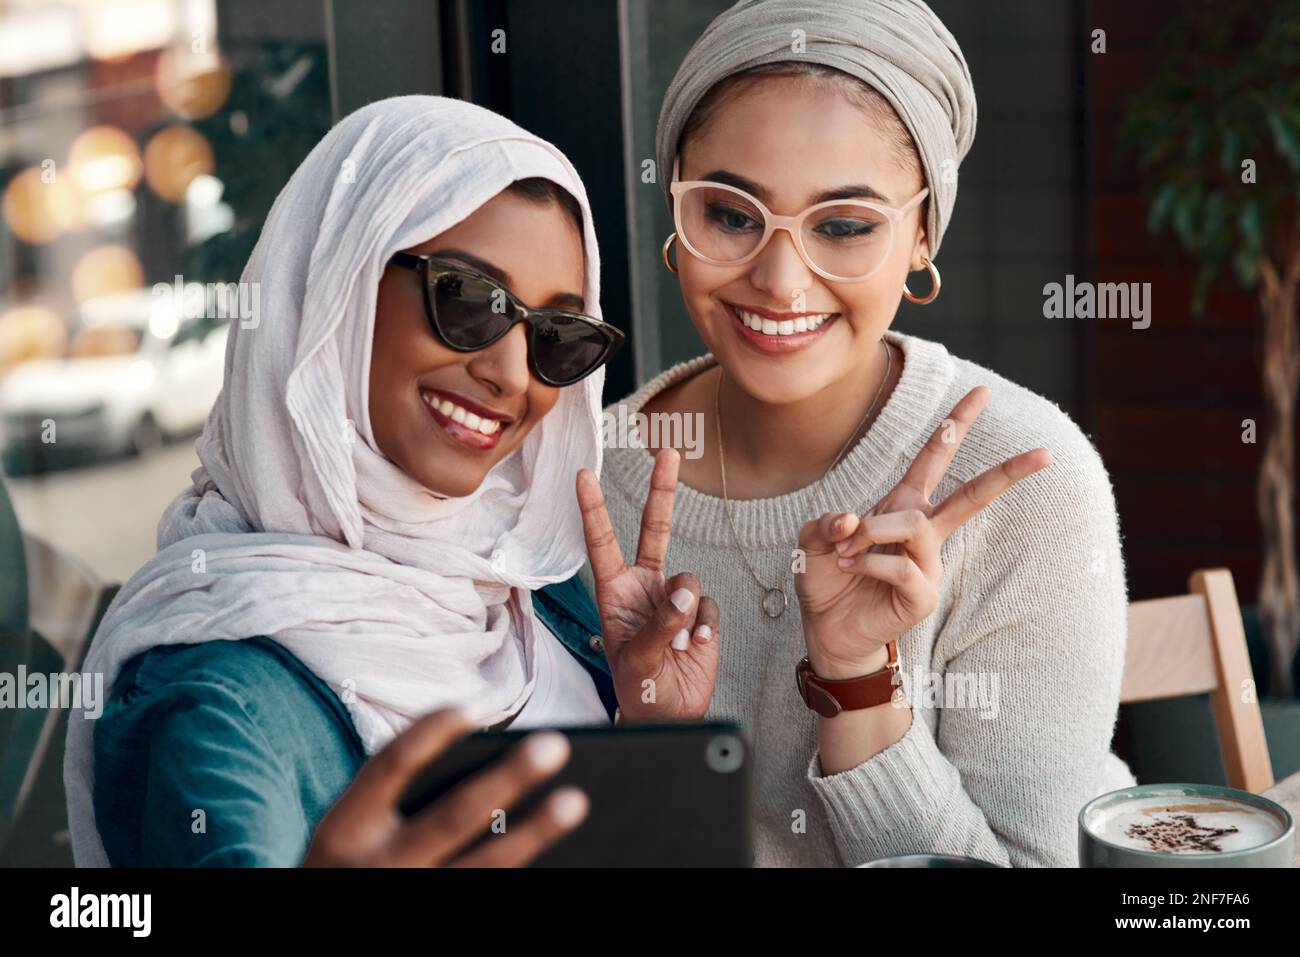 Nous étions ici pour prêcher des gens de la paix. Coupe courte deux jeunes amies affectueuses qui se posent ensemble pour un selfie dans un café tout en étant vêtues de hijab. Banque D'Images